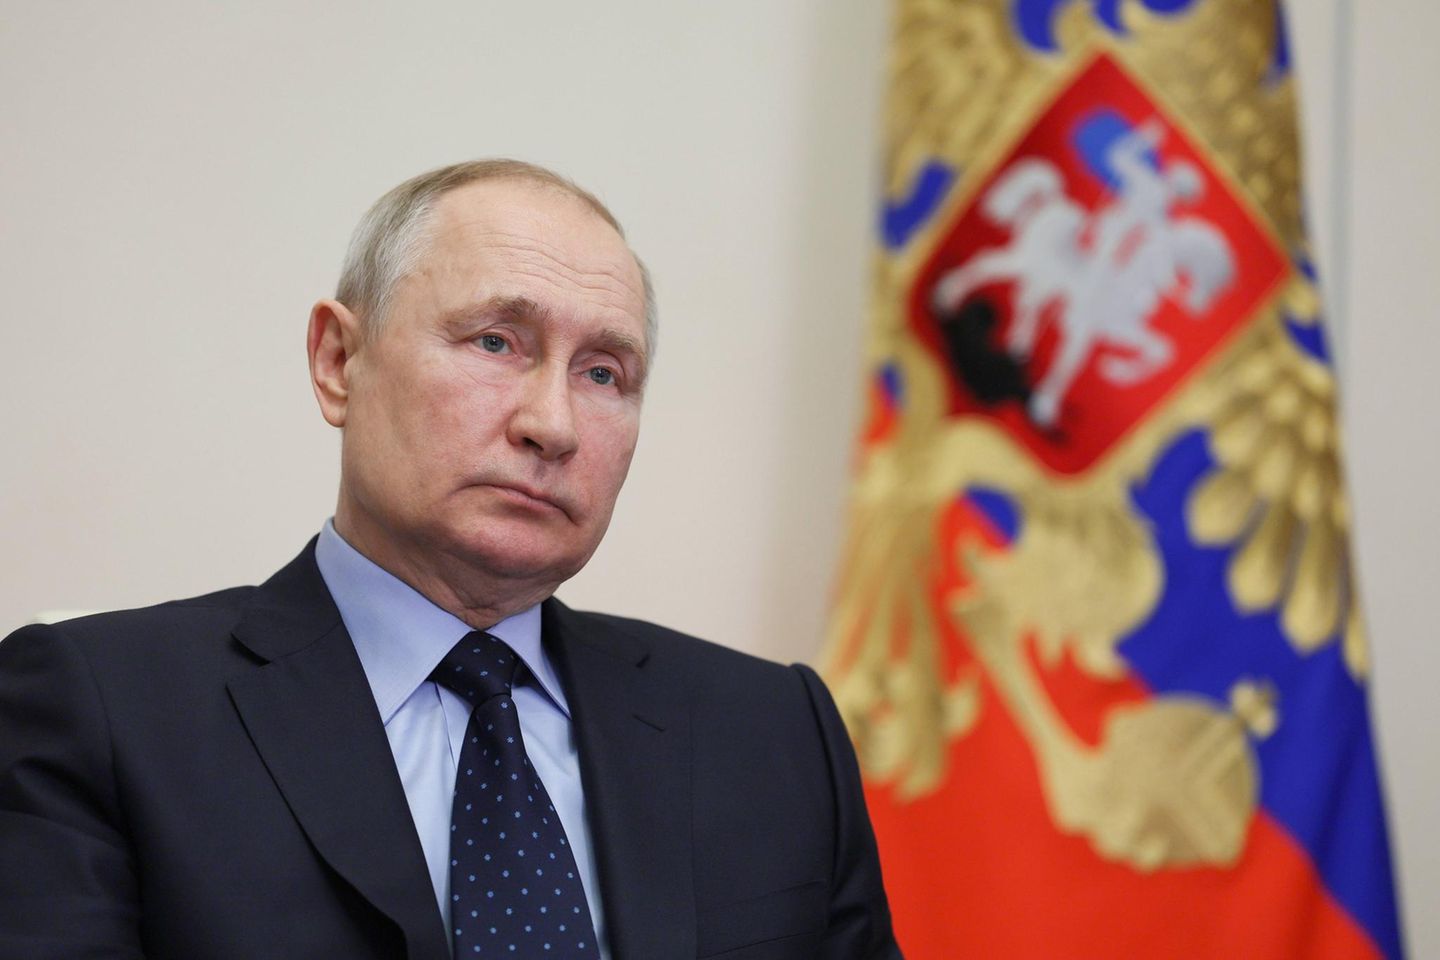 Der russische Präsident Putin nimmt an einer Videokonferenz teil